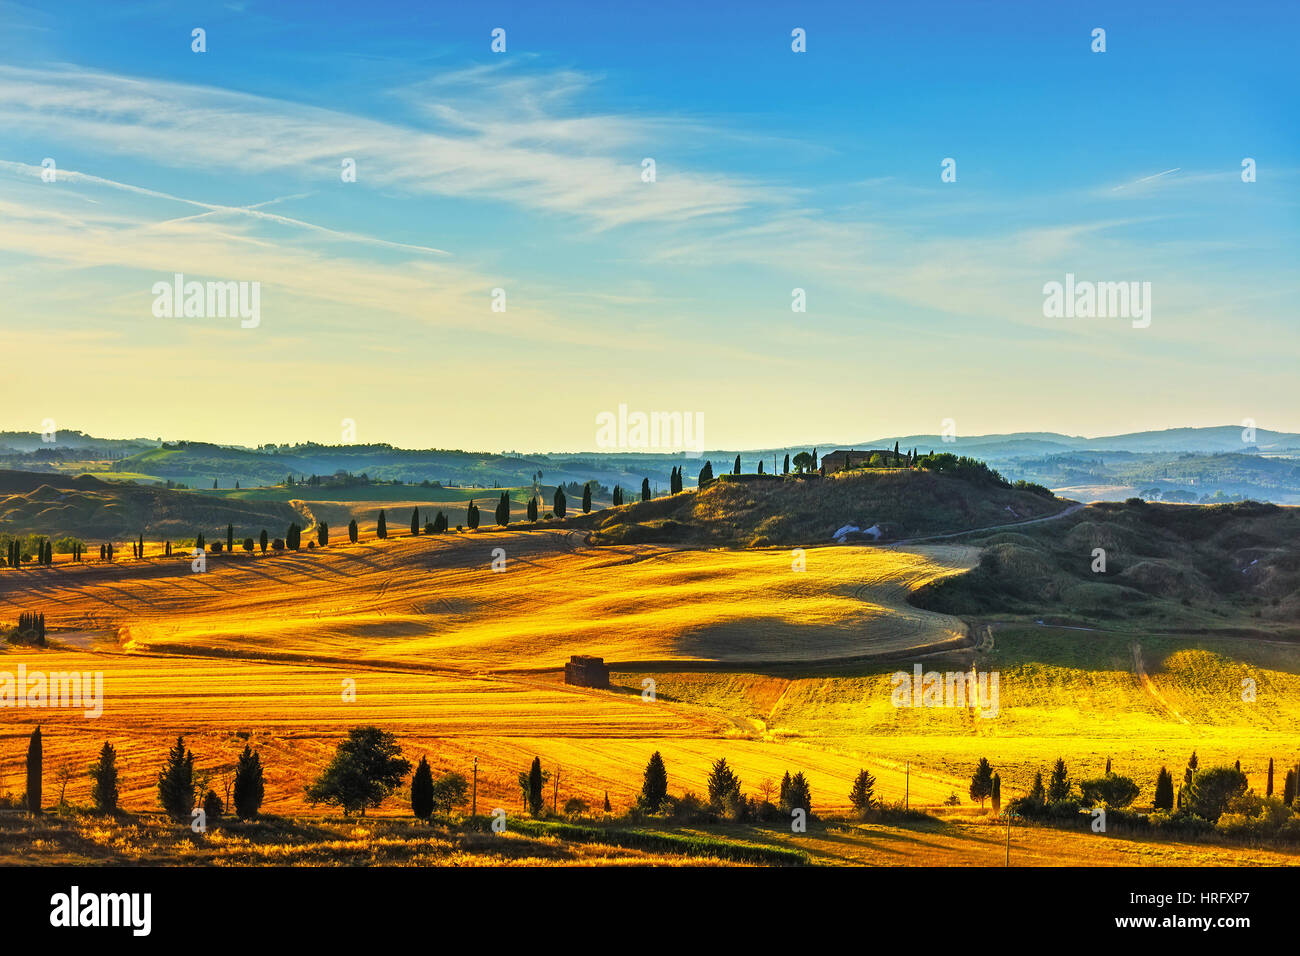 La toscane, paysage rural. Campagne ferme, cyprès et arbres champ vert. L'Italie, l'Europe. Banque D'Images